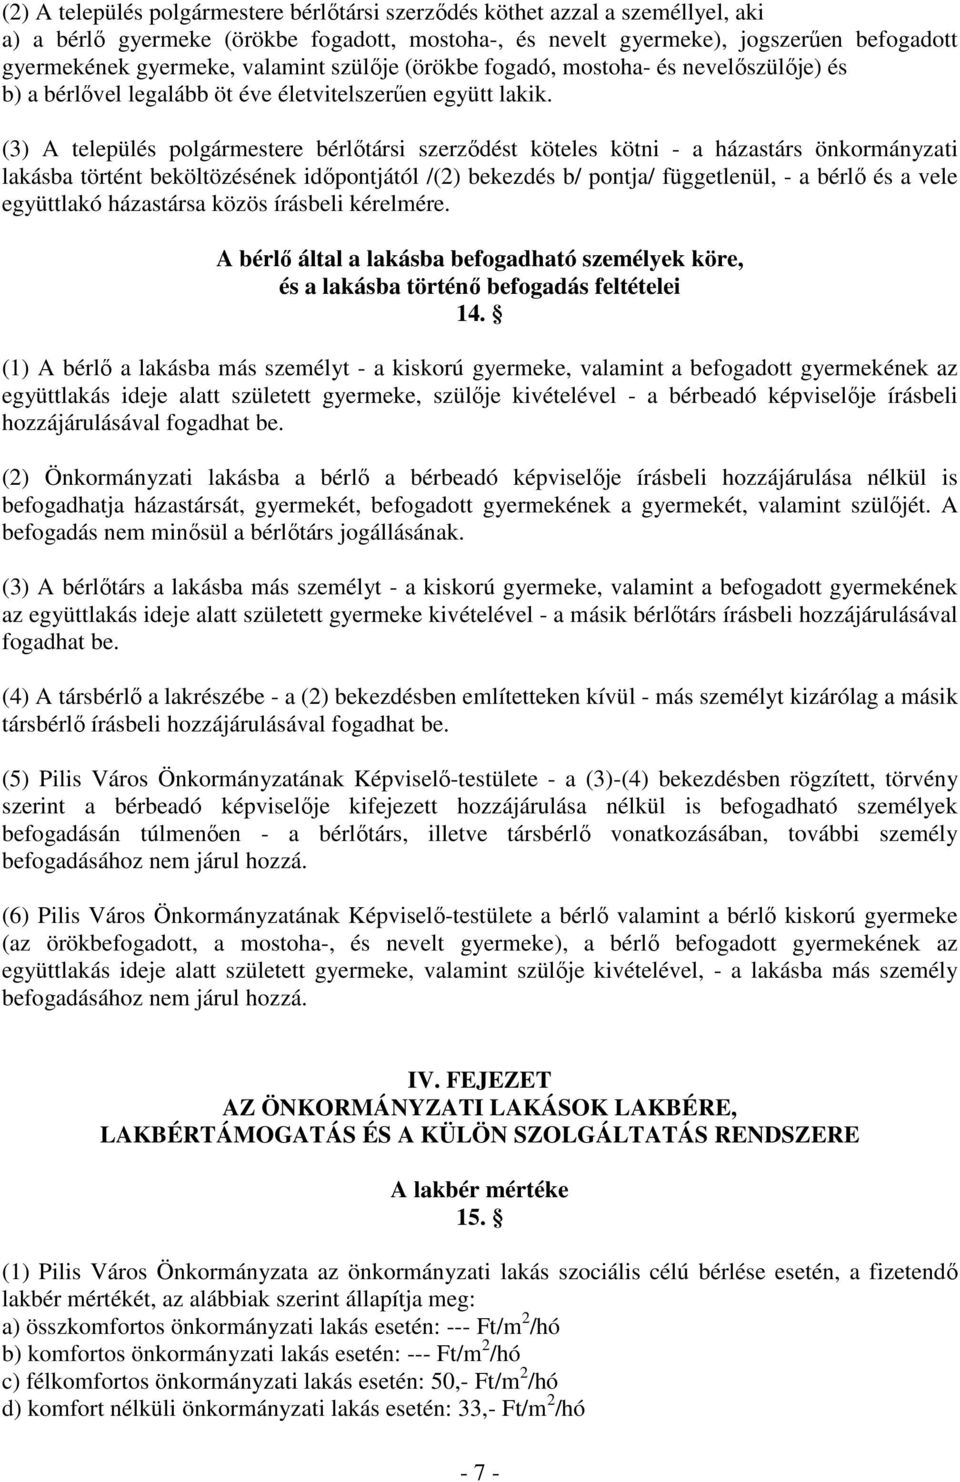 (3) A település polgármestere bérlıtársi szerzıdést köteles kötni - a házastárs önkormányzati lakásba történt beköltözésének idıpontjától /(2) bekezdés b/ pontja/ függetlenül, - a bérlı és a vele